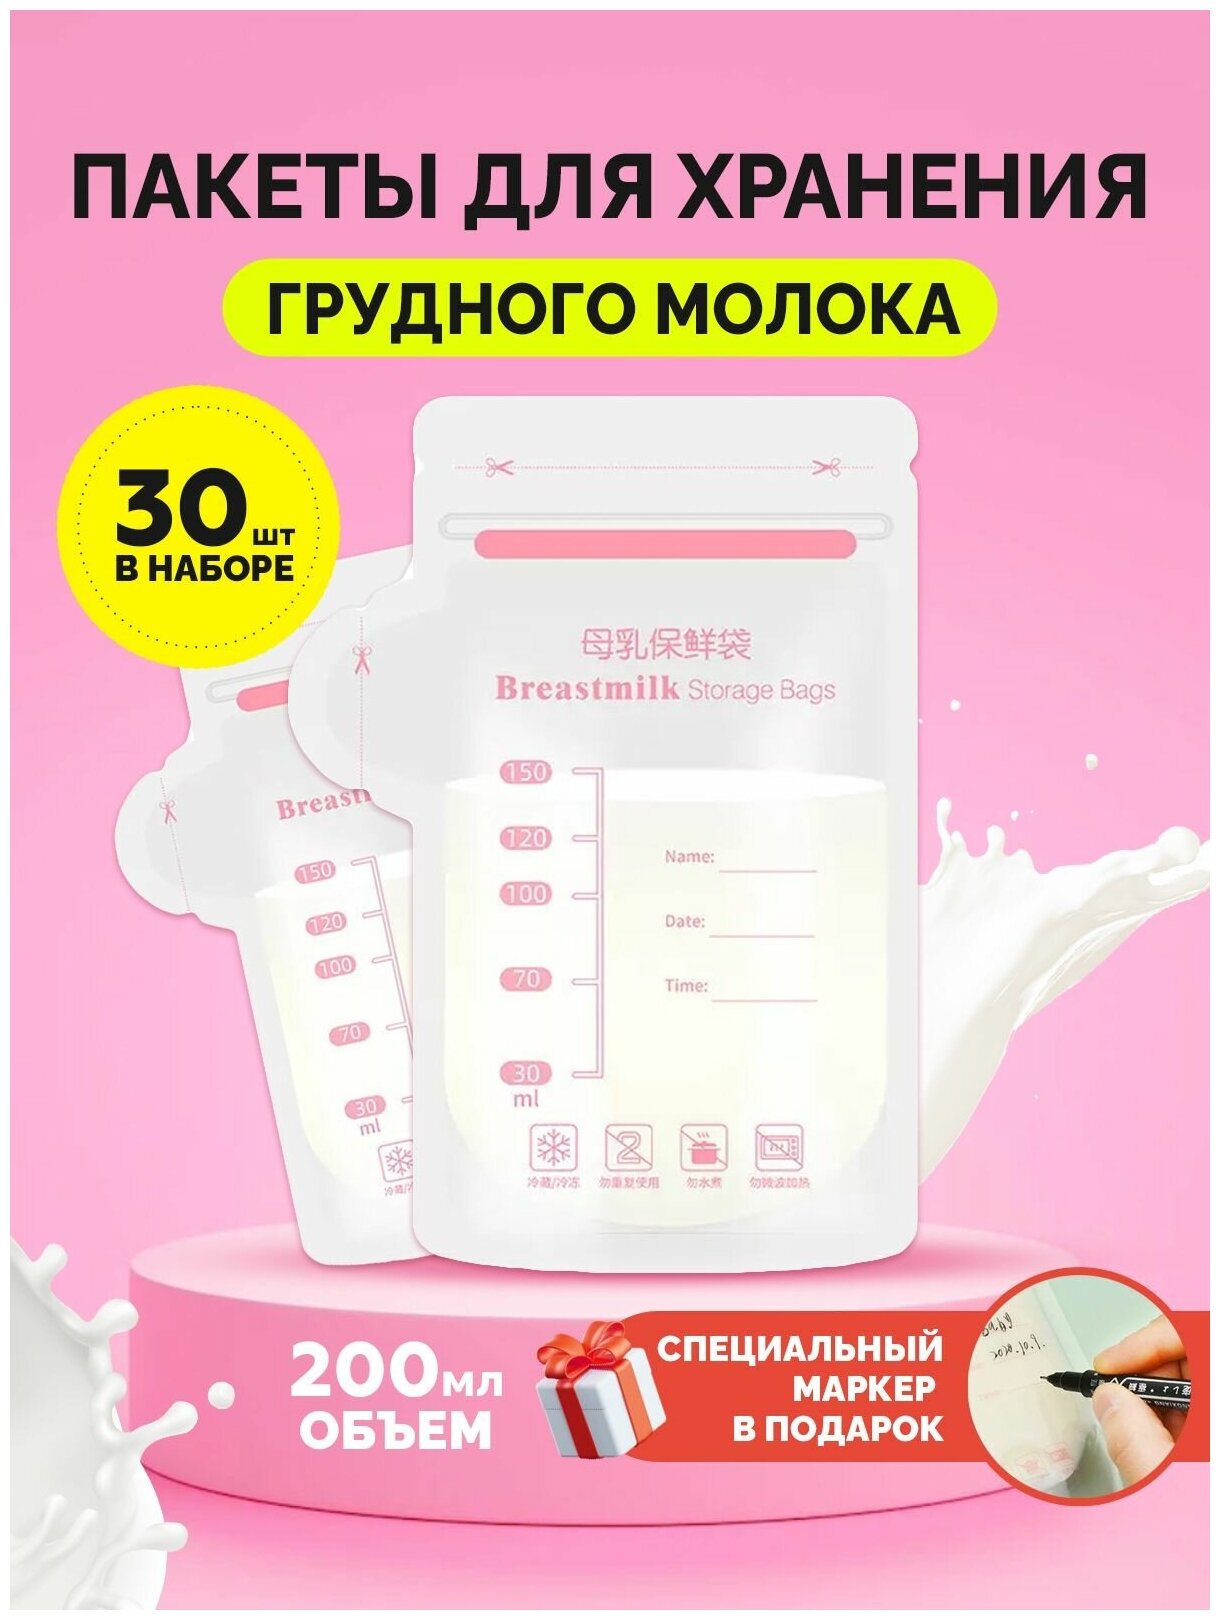 Пакеты для грудного молока пакеты для хранения и заморозки молока грудного 200 мл 30 шт